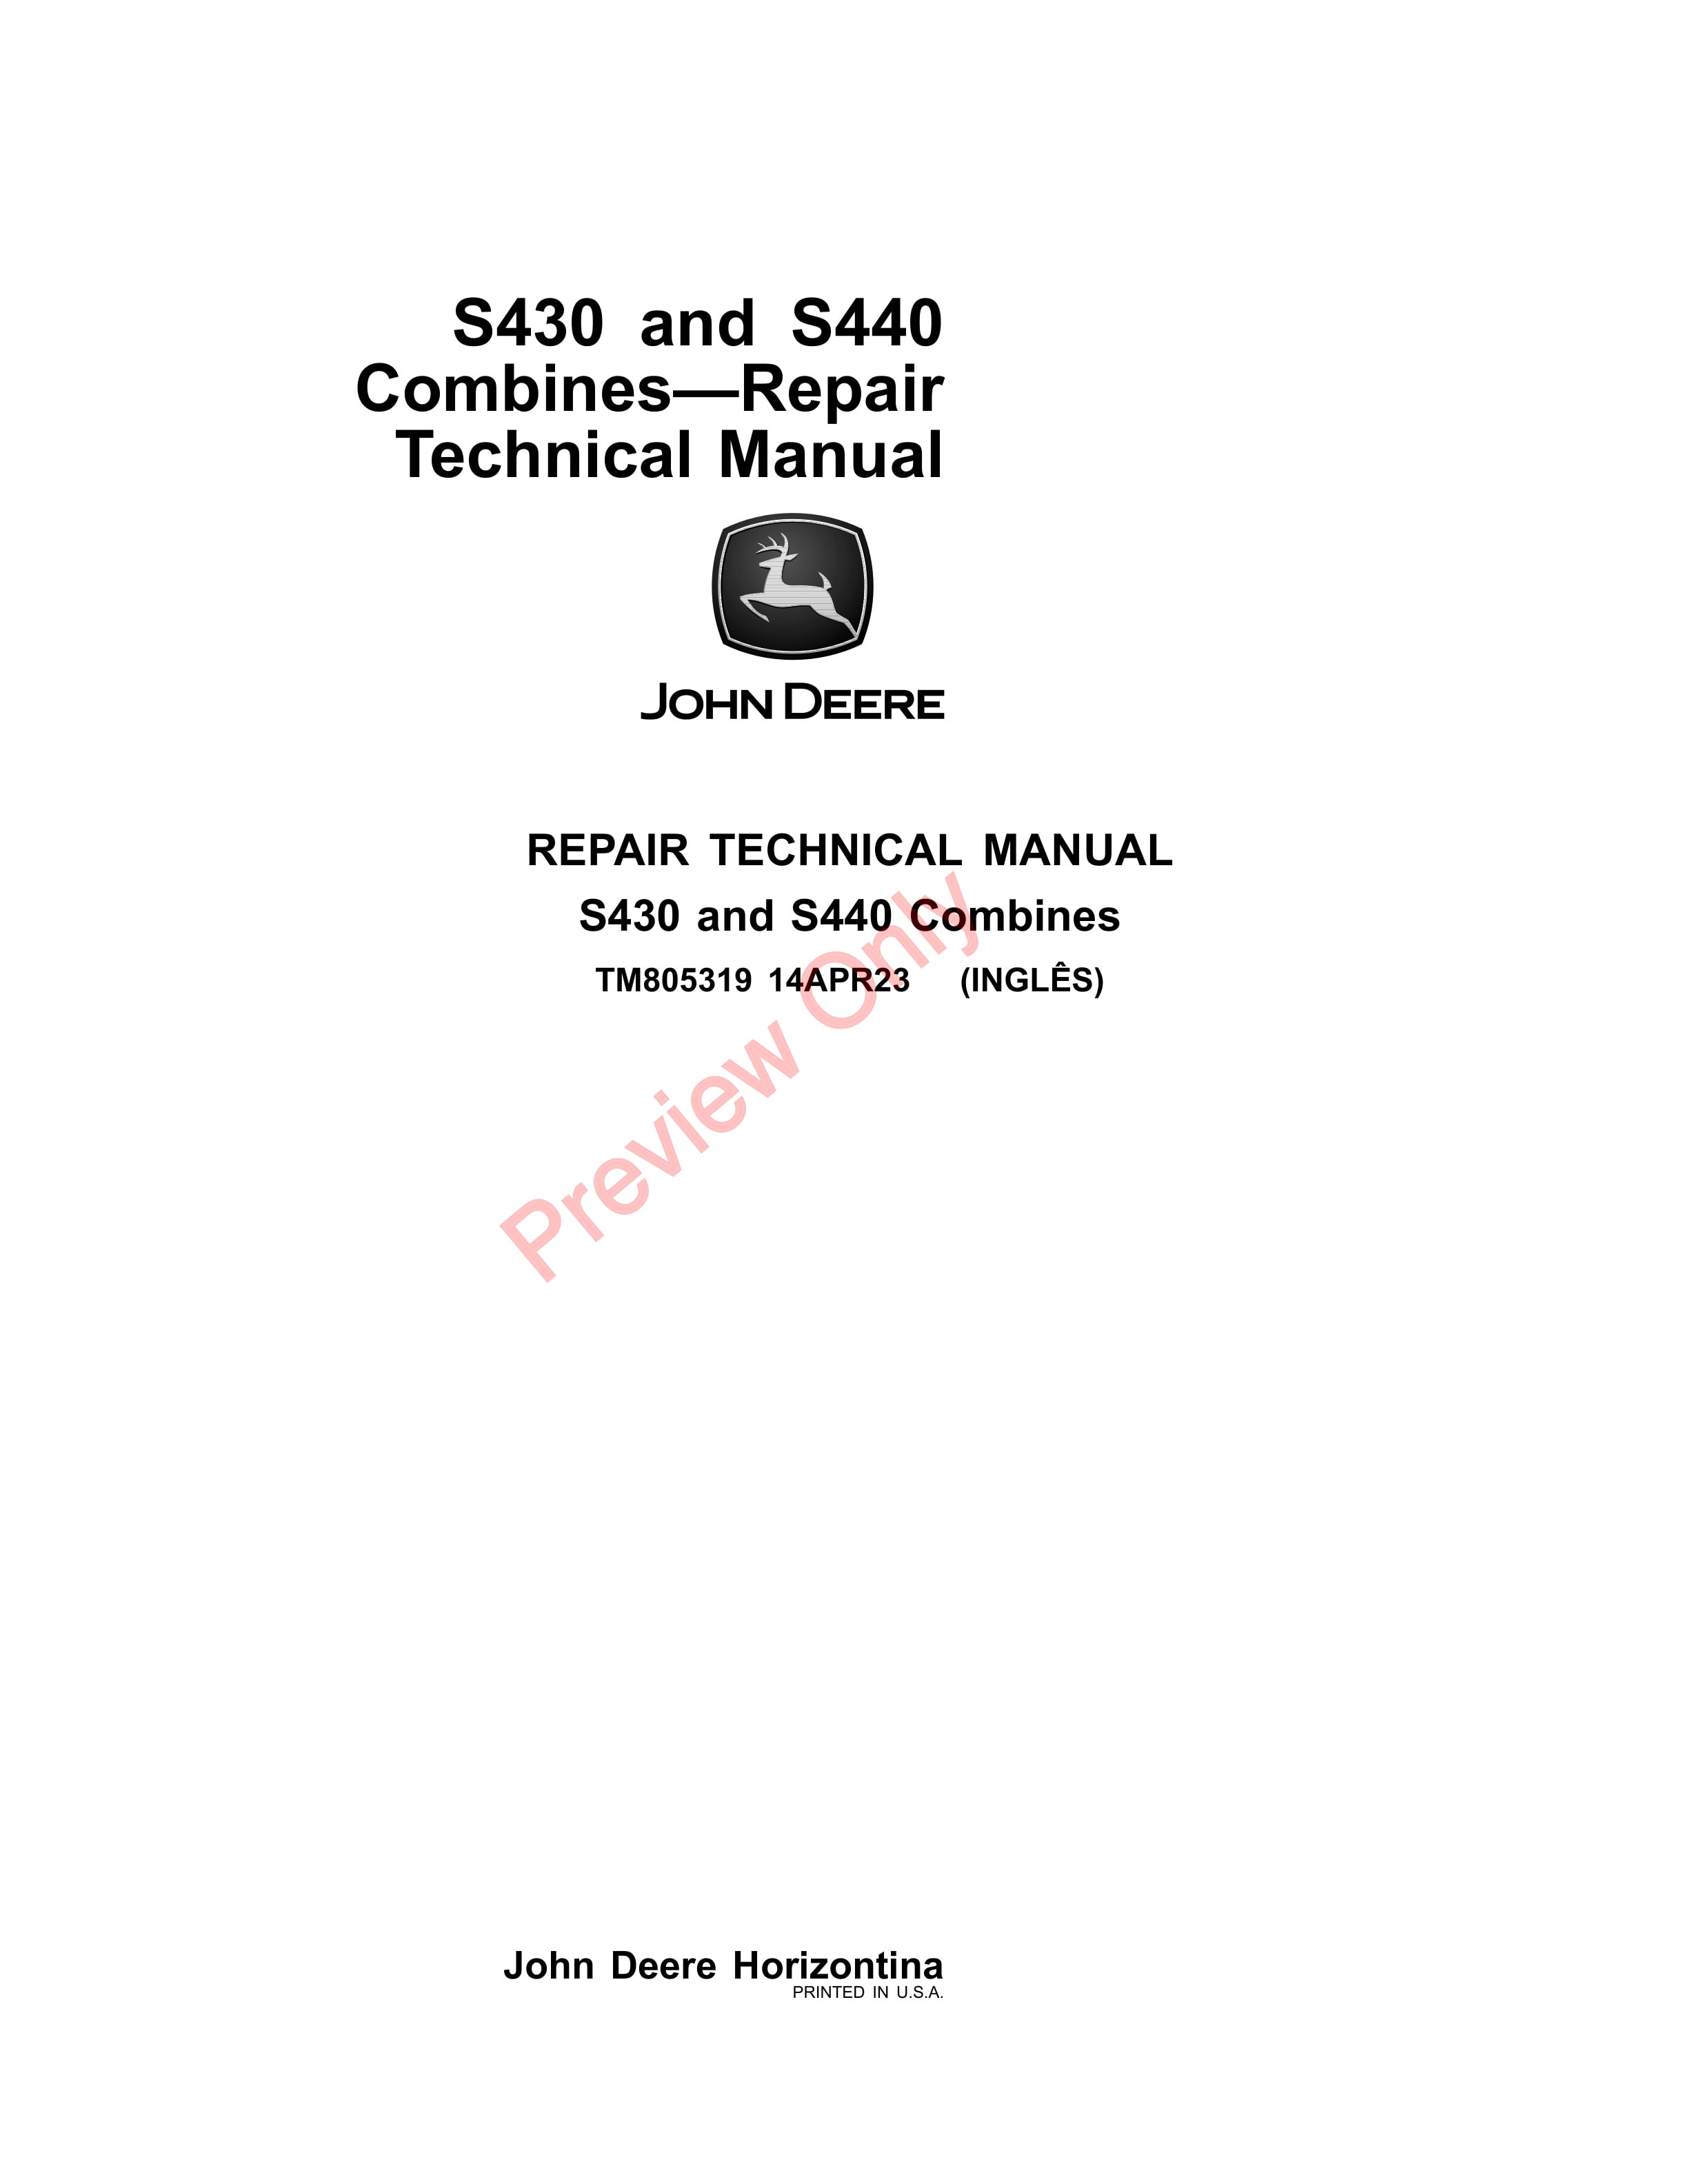 John Deere S430 and S440 Combines Repair Technical Manual TM805319 14APR23-1